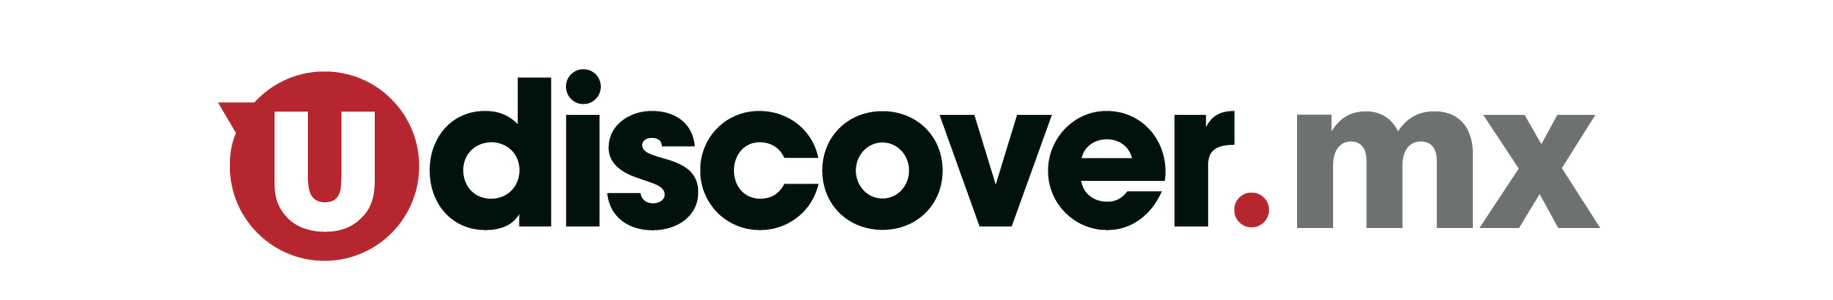 uDiscover Store Mx logo